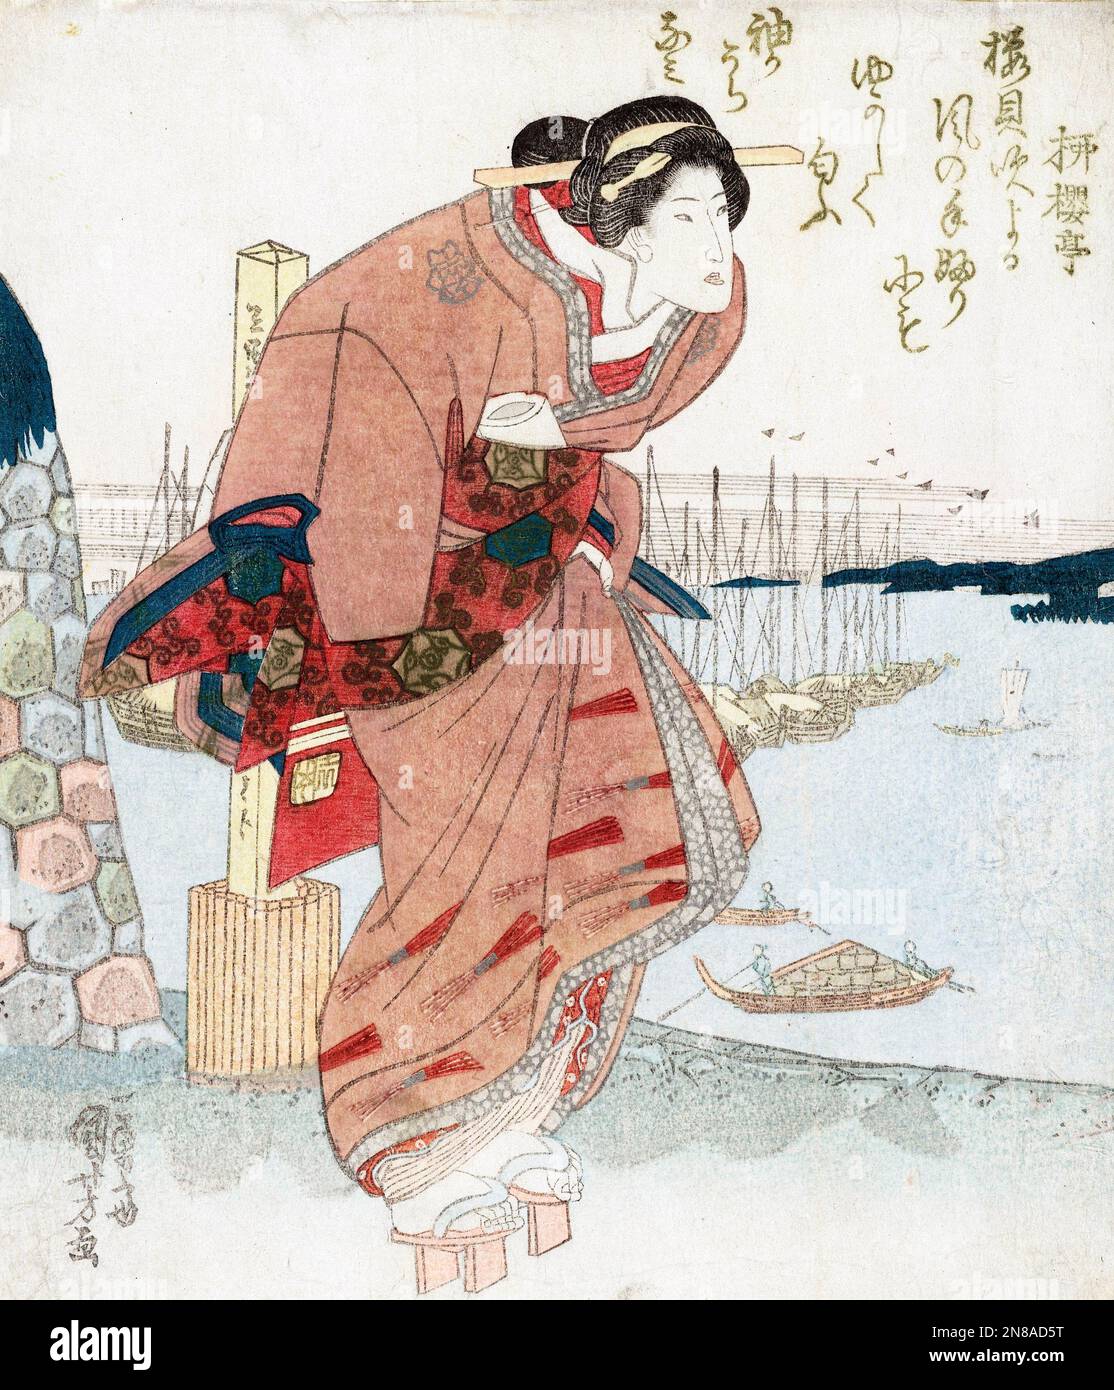 Utagawa Kuniyoshi. Painting entitled 'Woman at a Harbour' by Utagawa Kuniyoshi (1798-1861), colour woodblock print, c. 1825-30 Stock Photo